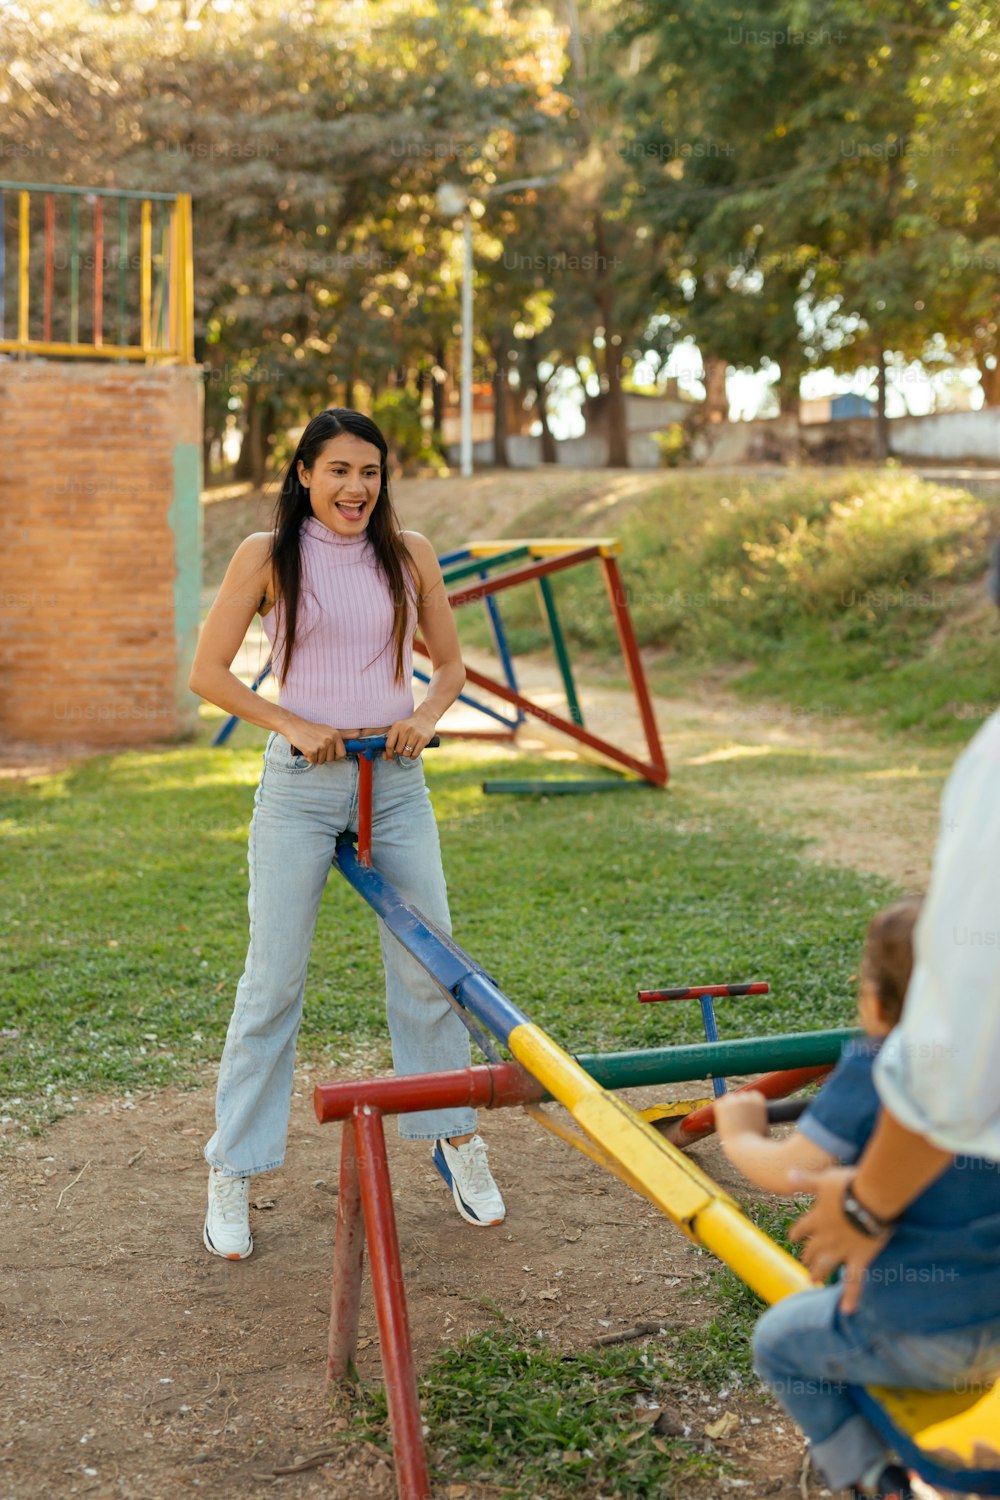 Eine Frau, die neben einem Kind auf einem Spielplatz steht